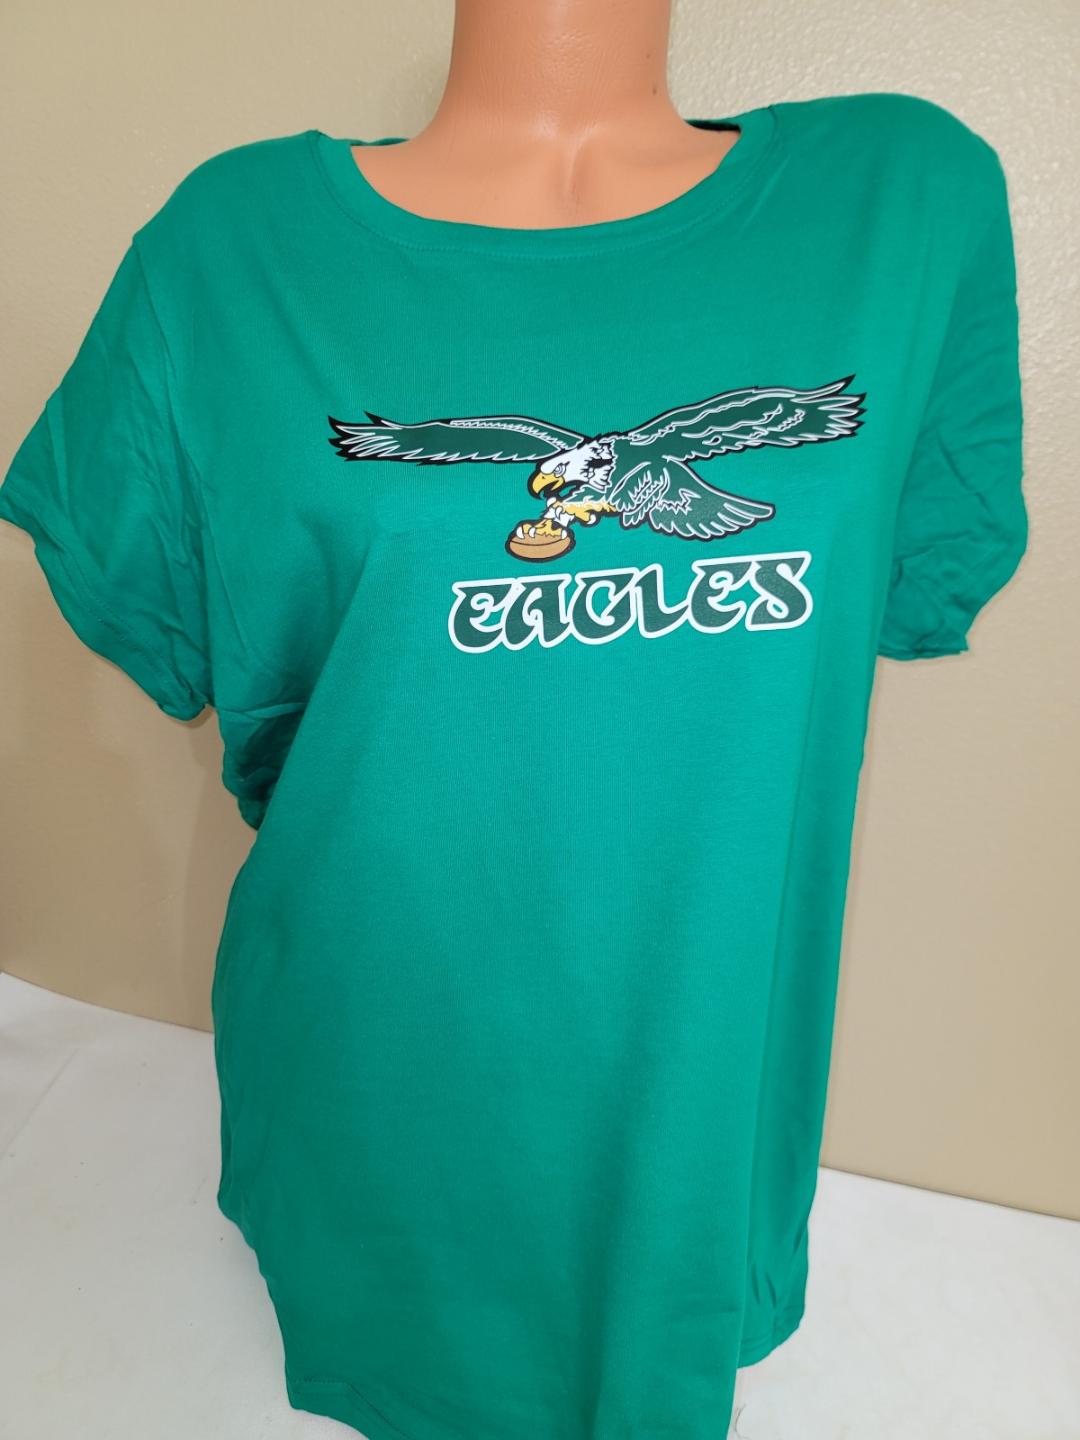 Philadelphia Eagles Womens Kelly Green Ringer Short Sleeve T-Shirt